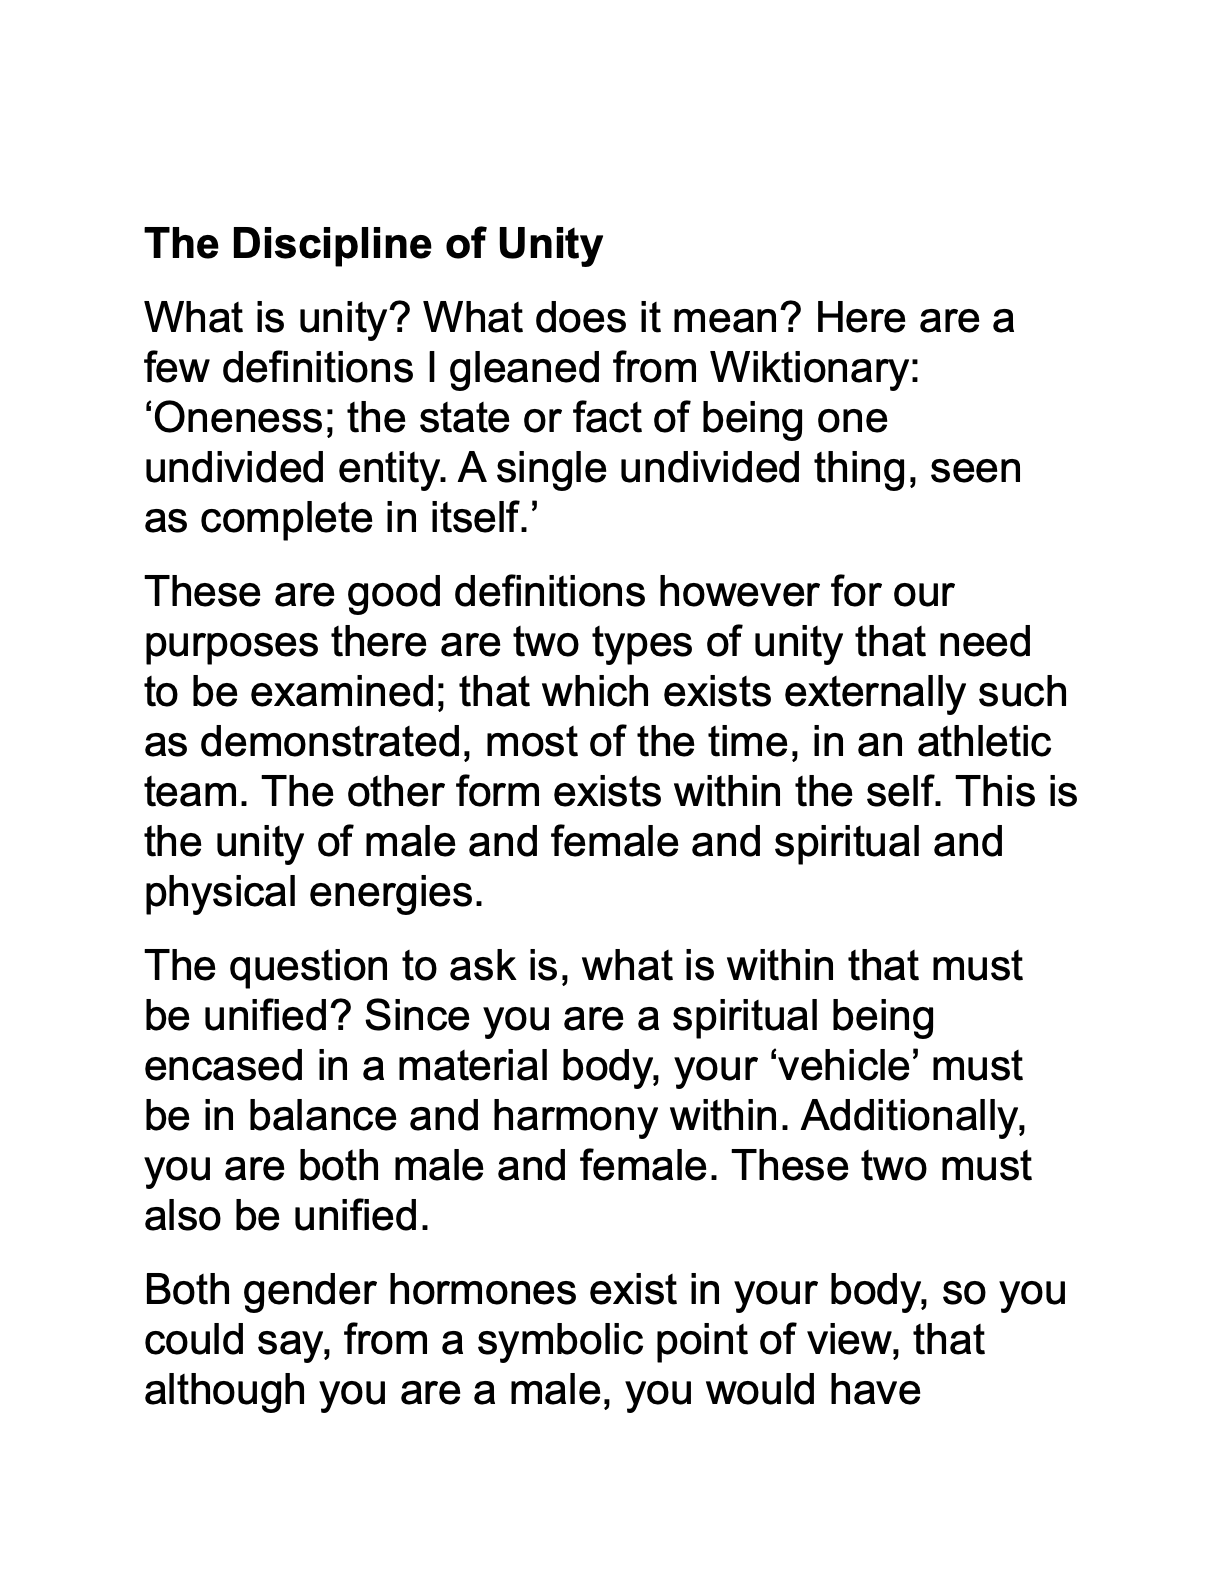 Discipline of Unity